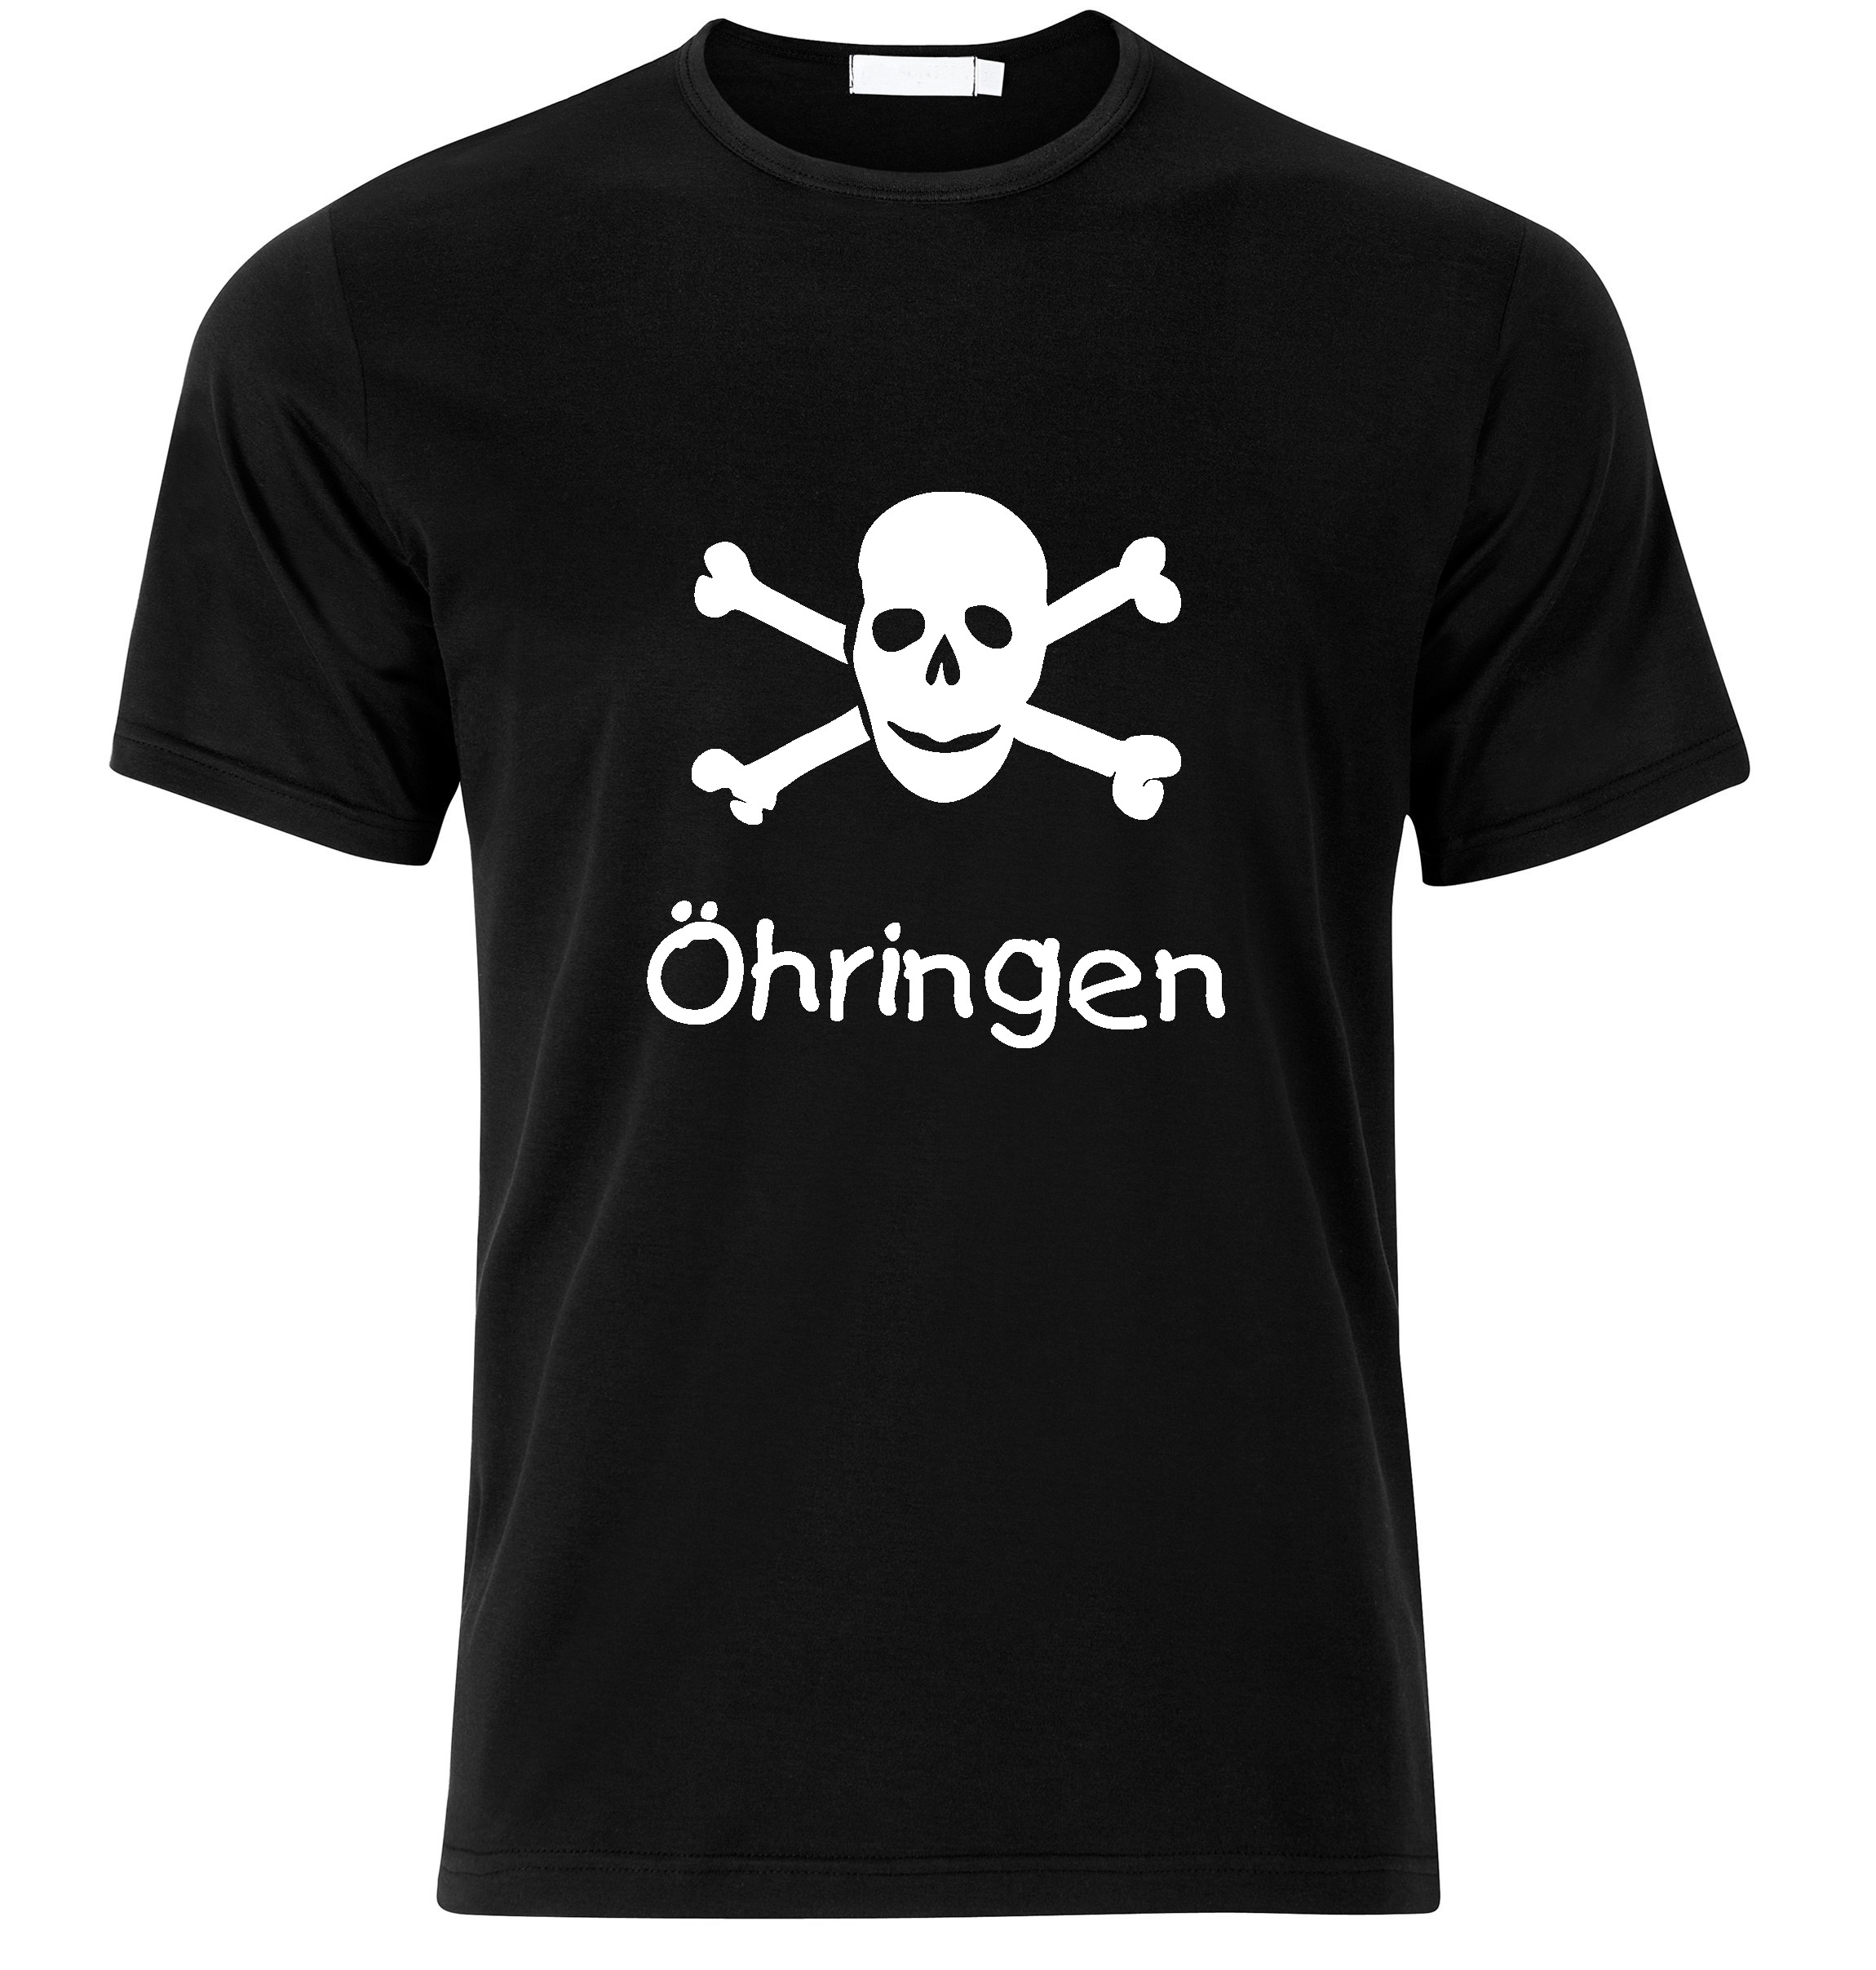 T-Shirt &Ouml;hringen Jolly Roger, Totenkopf